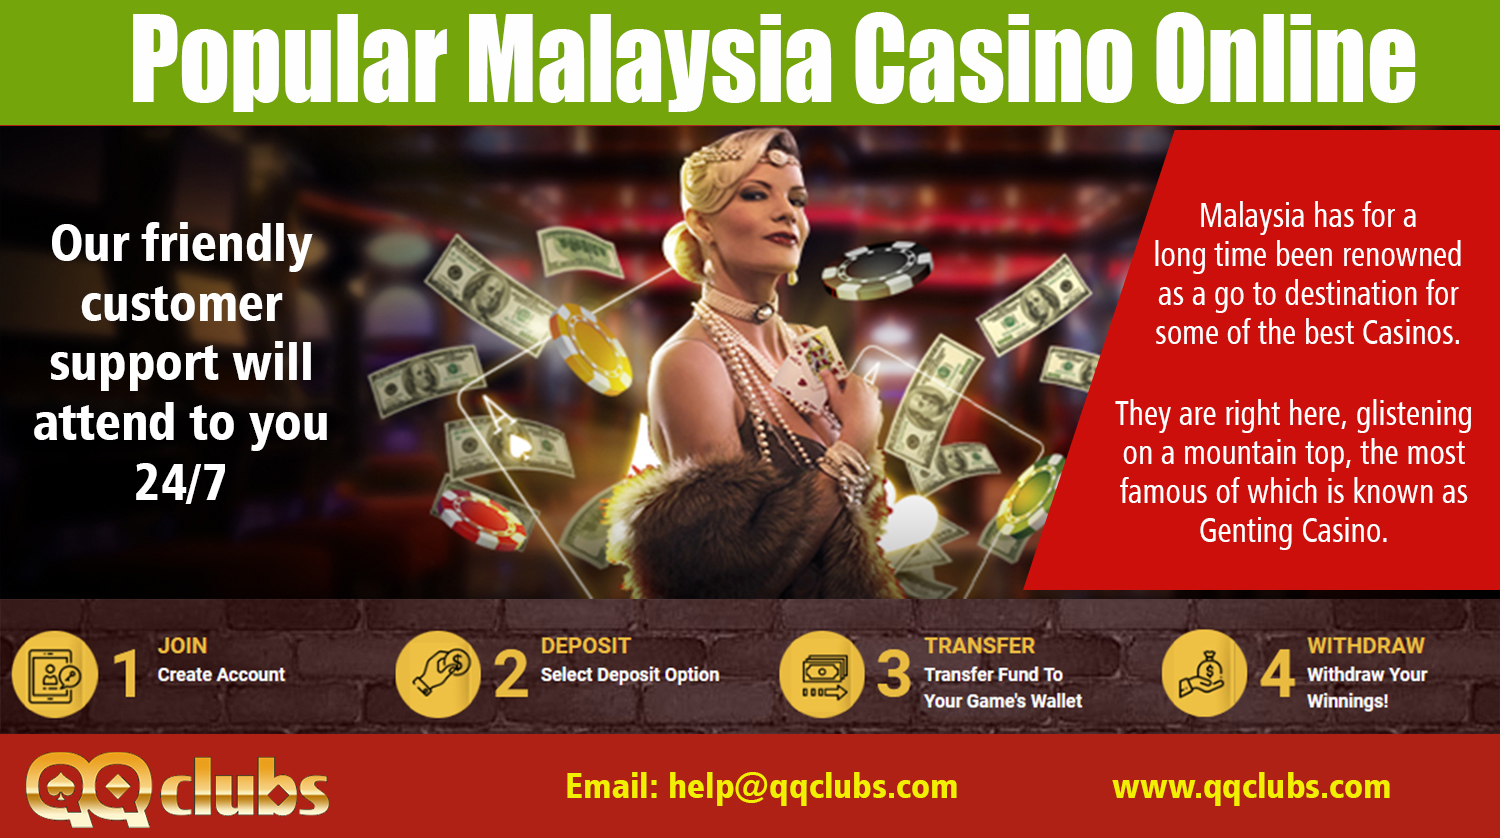 Casino online malaysia free credit fora казино ра онлайн играть на реальные деньги зеркало